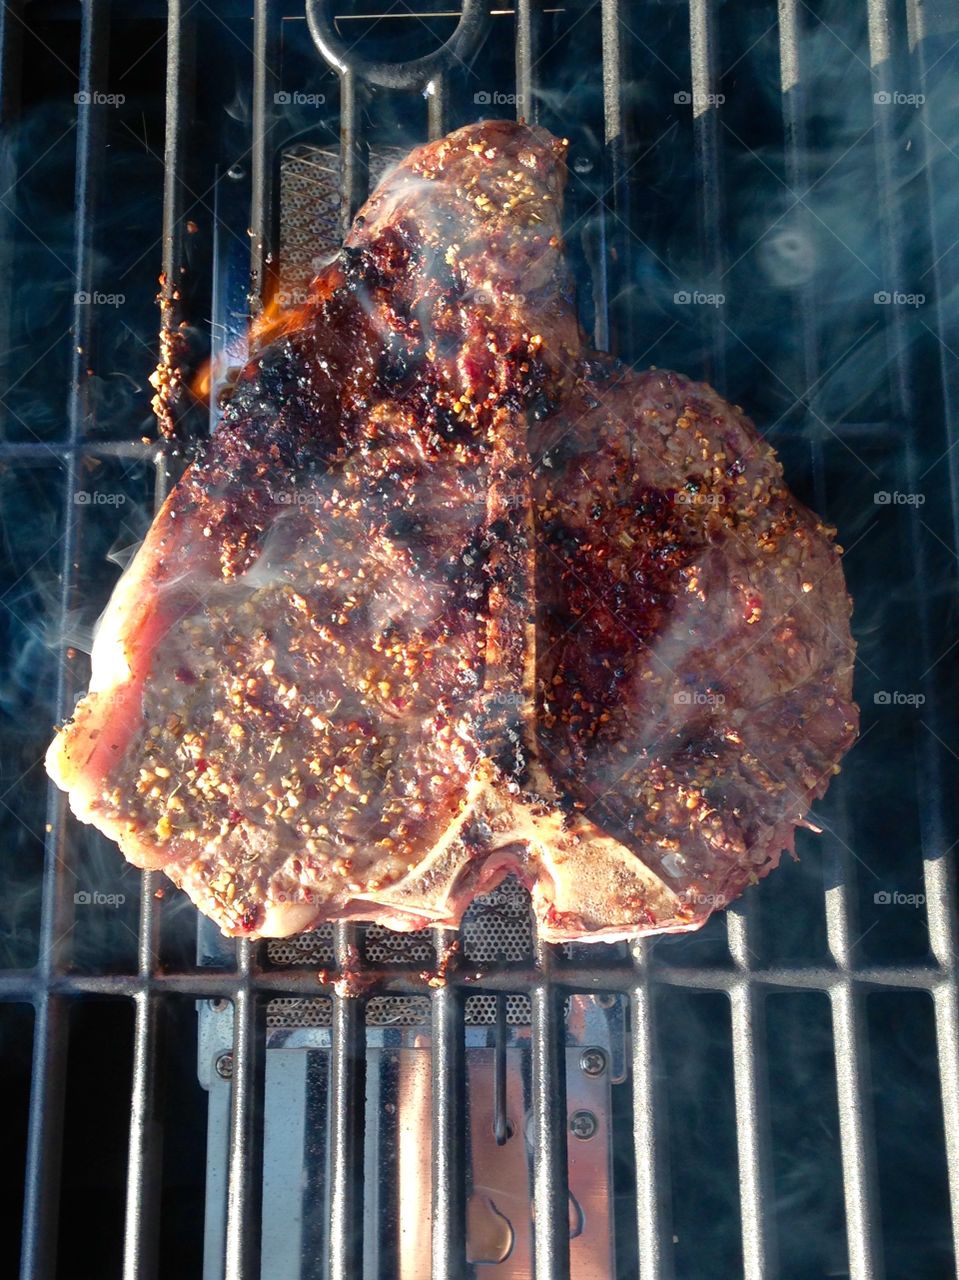 T-bone steak. Grilling